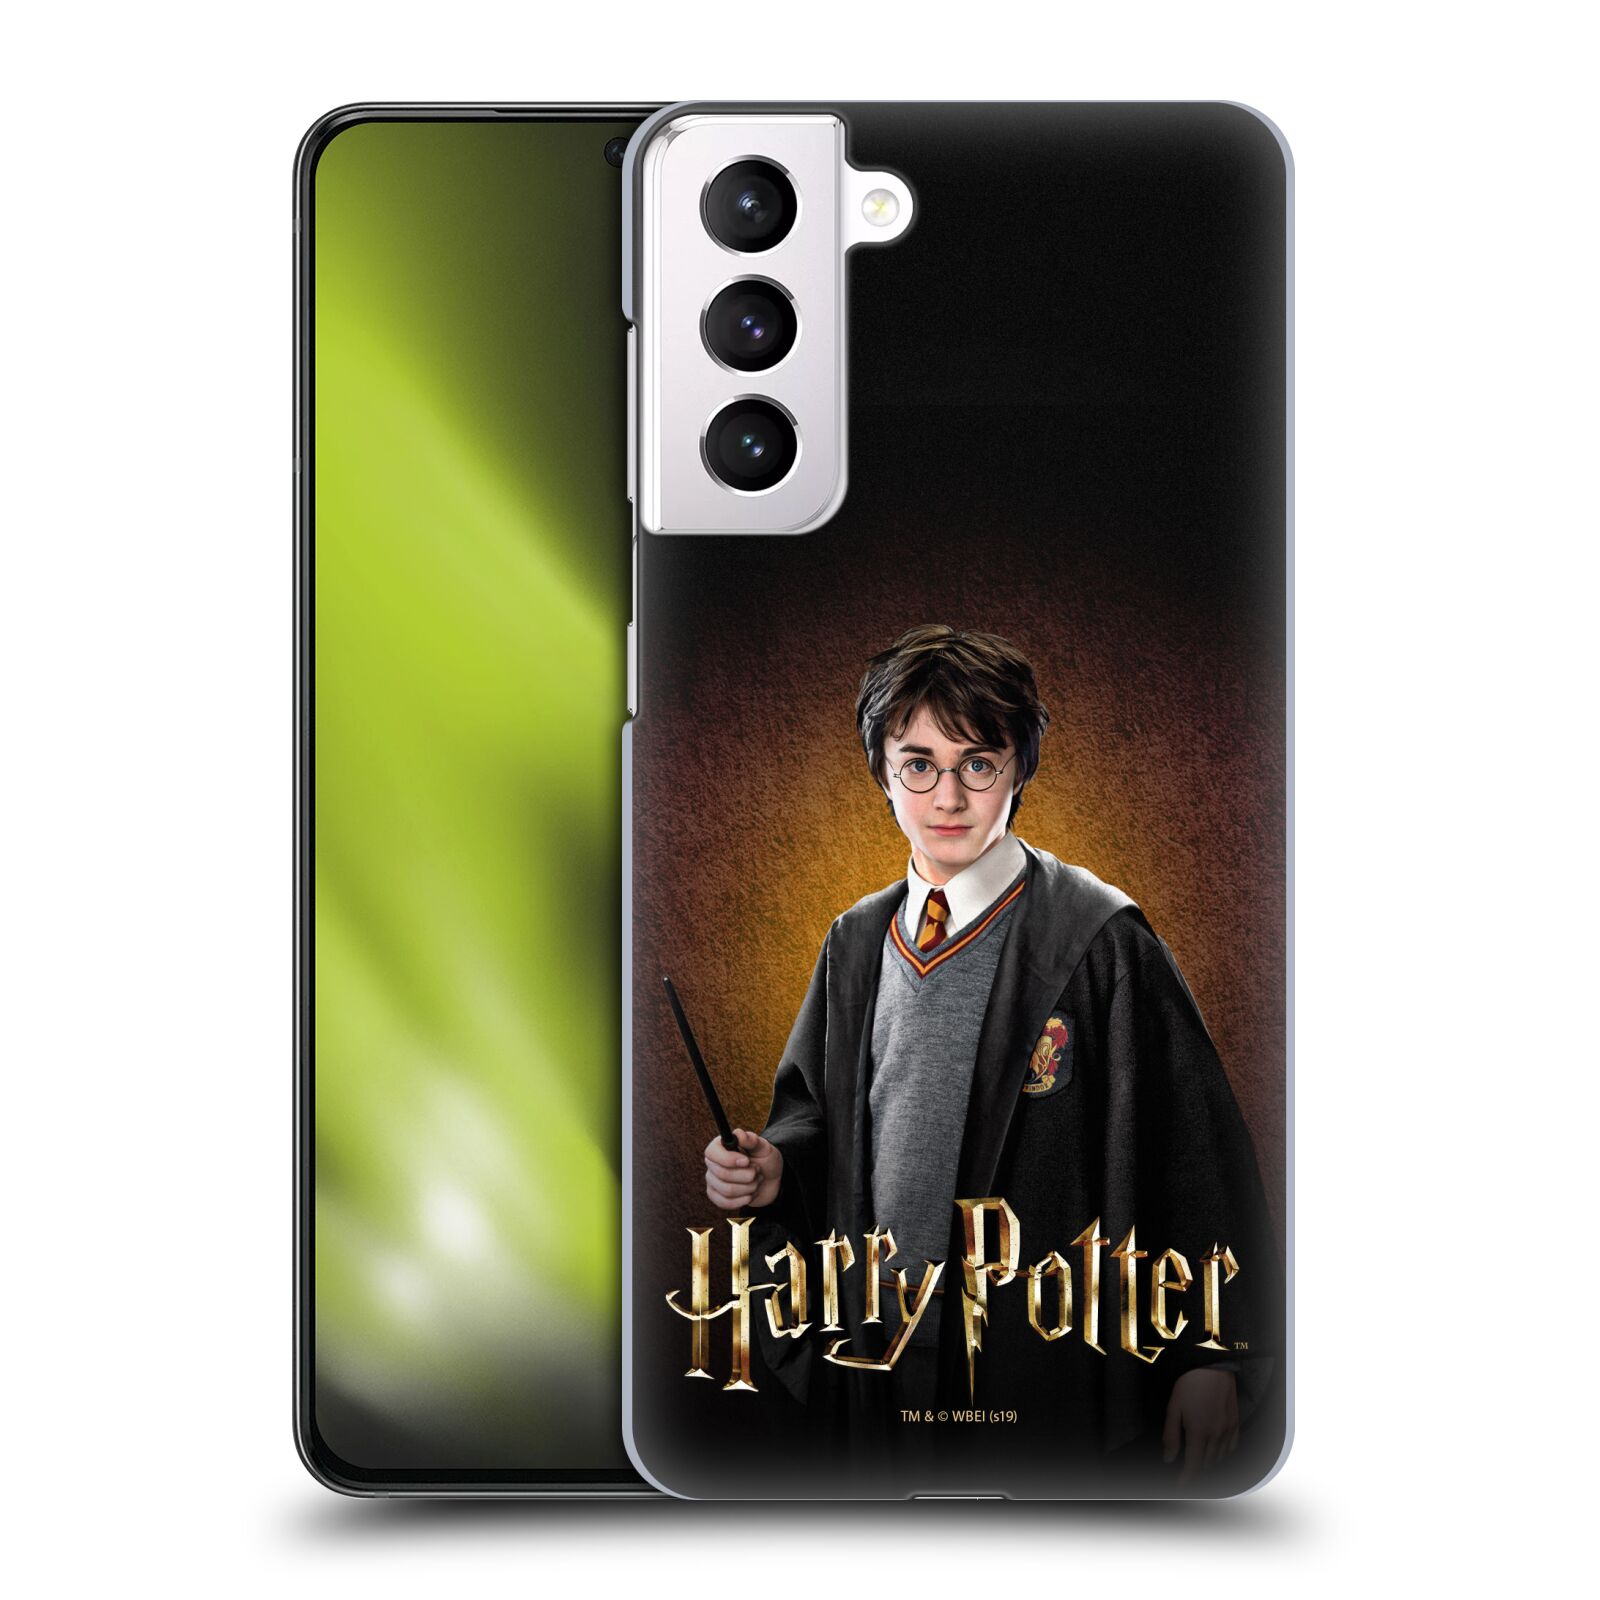 Plastové pouzdro na mobil Samsung Galaxy S21 5G - Harry Potter - Malý Harry Potter (Plastový kryt, pouzdro, obal na mobilní telefon Samsung Galaxy S21 5G G991B s licencovaným motivem Harry Potter - Malý Harry Potter)